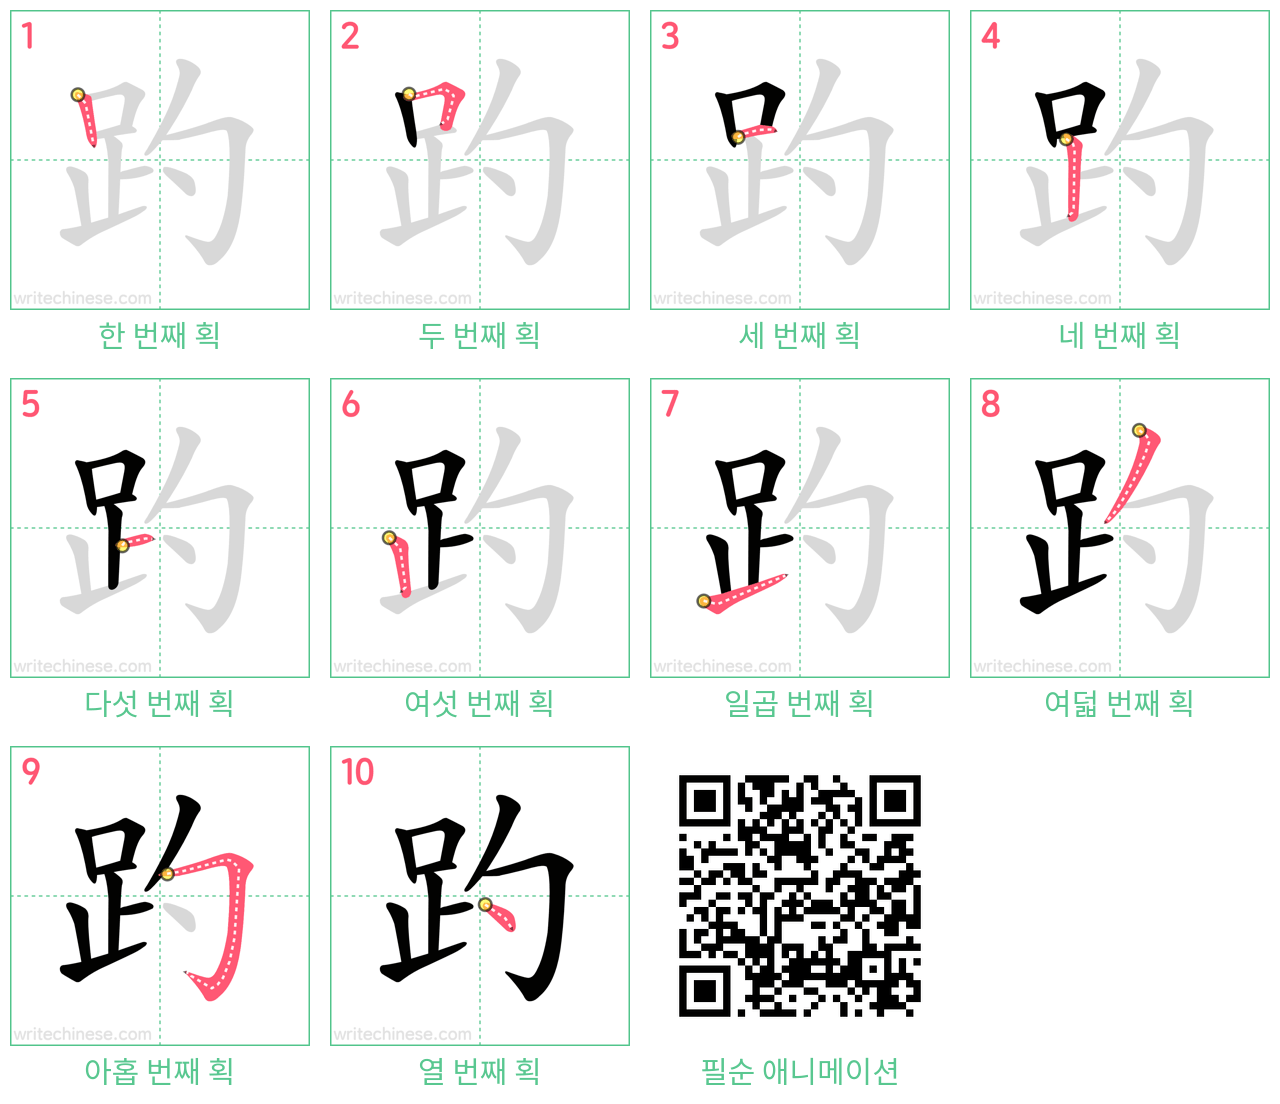 趵 step-by-step stroke order diagrams